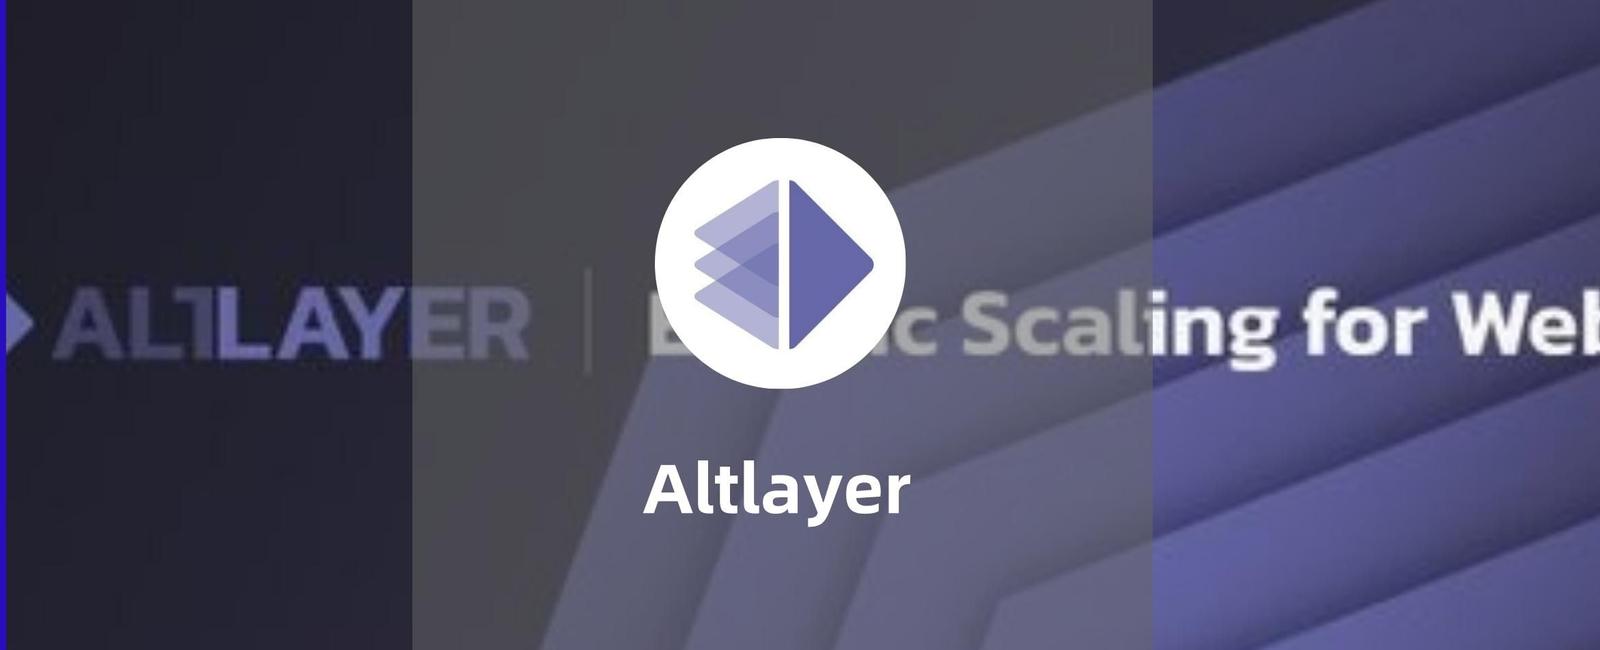 Altlayer-模块化区块链新构想